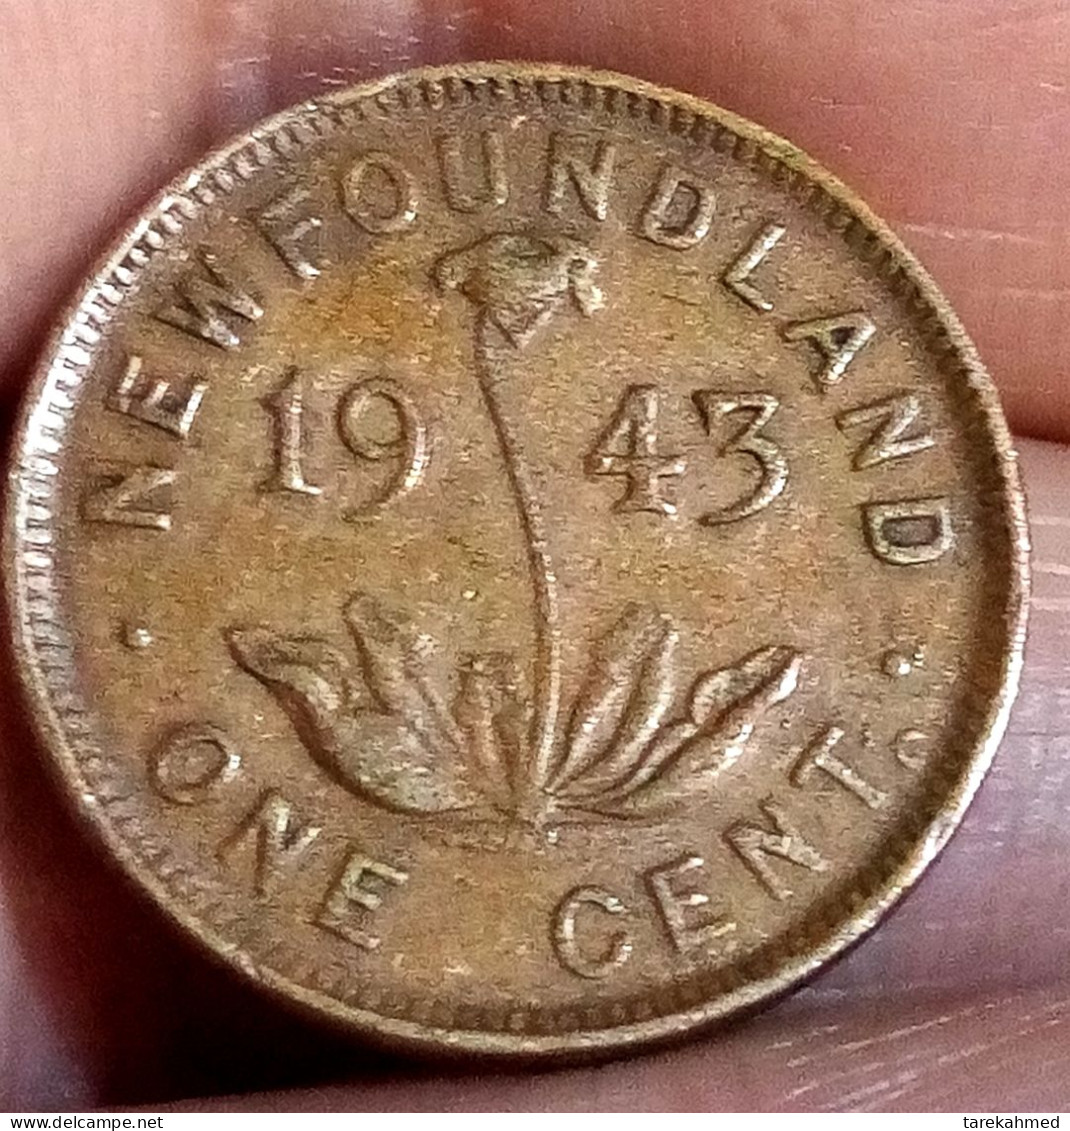 NEW Foundland, 1 CENT, 1943 C, KM# 18, George VI, Perfect, Agouz - Canada